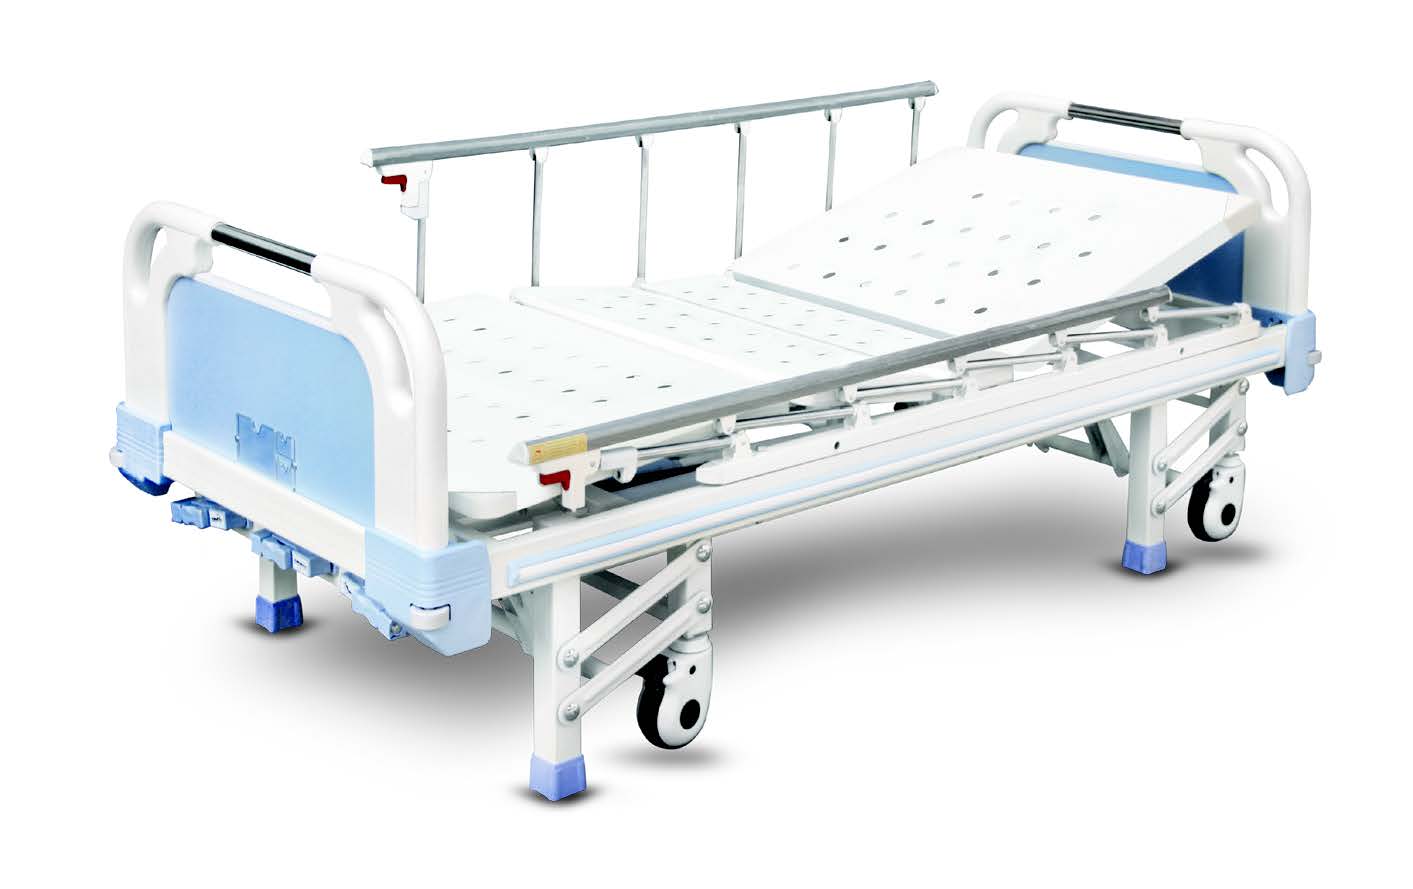 Кровать BLT 8538 G-4 медицинская функциональная механическая, 3 функции, ножки/колеса